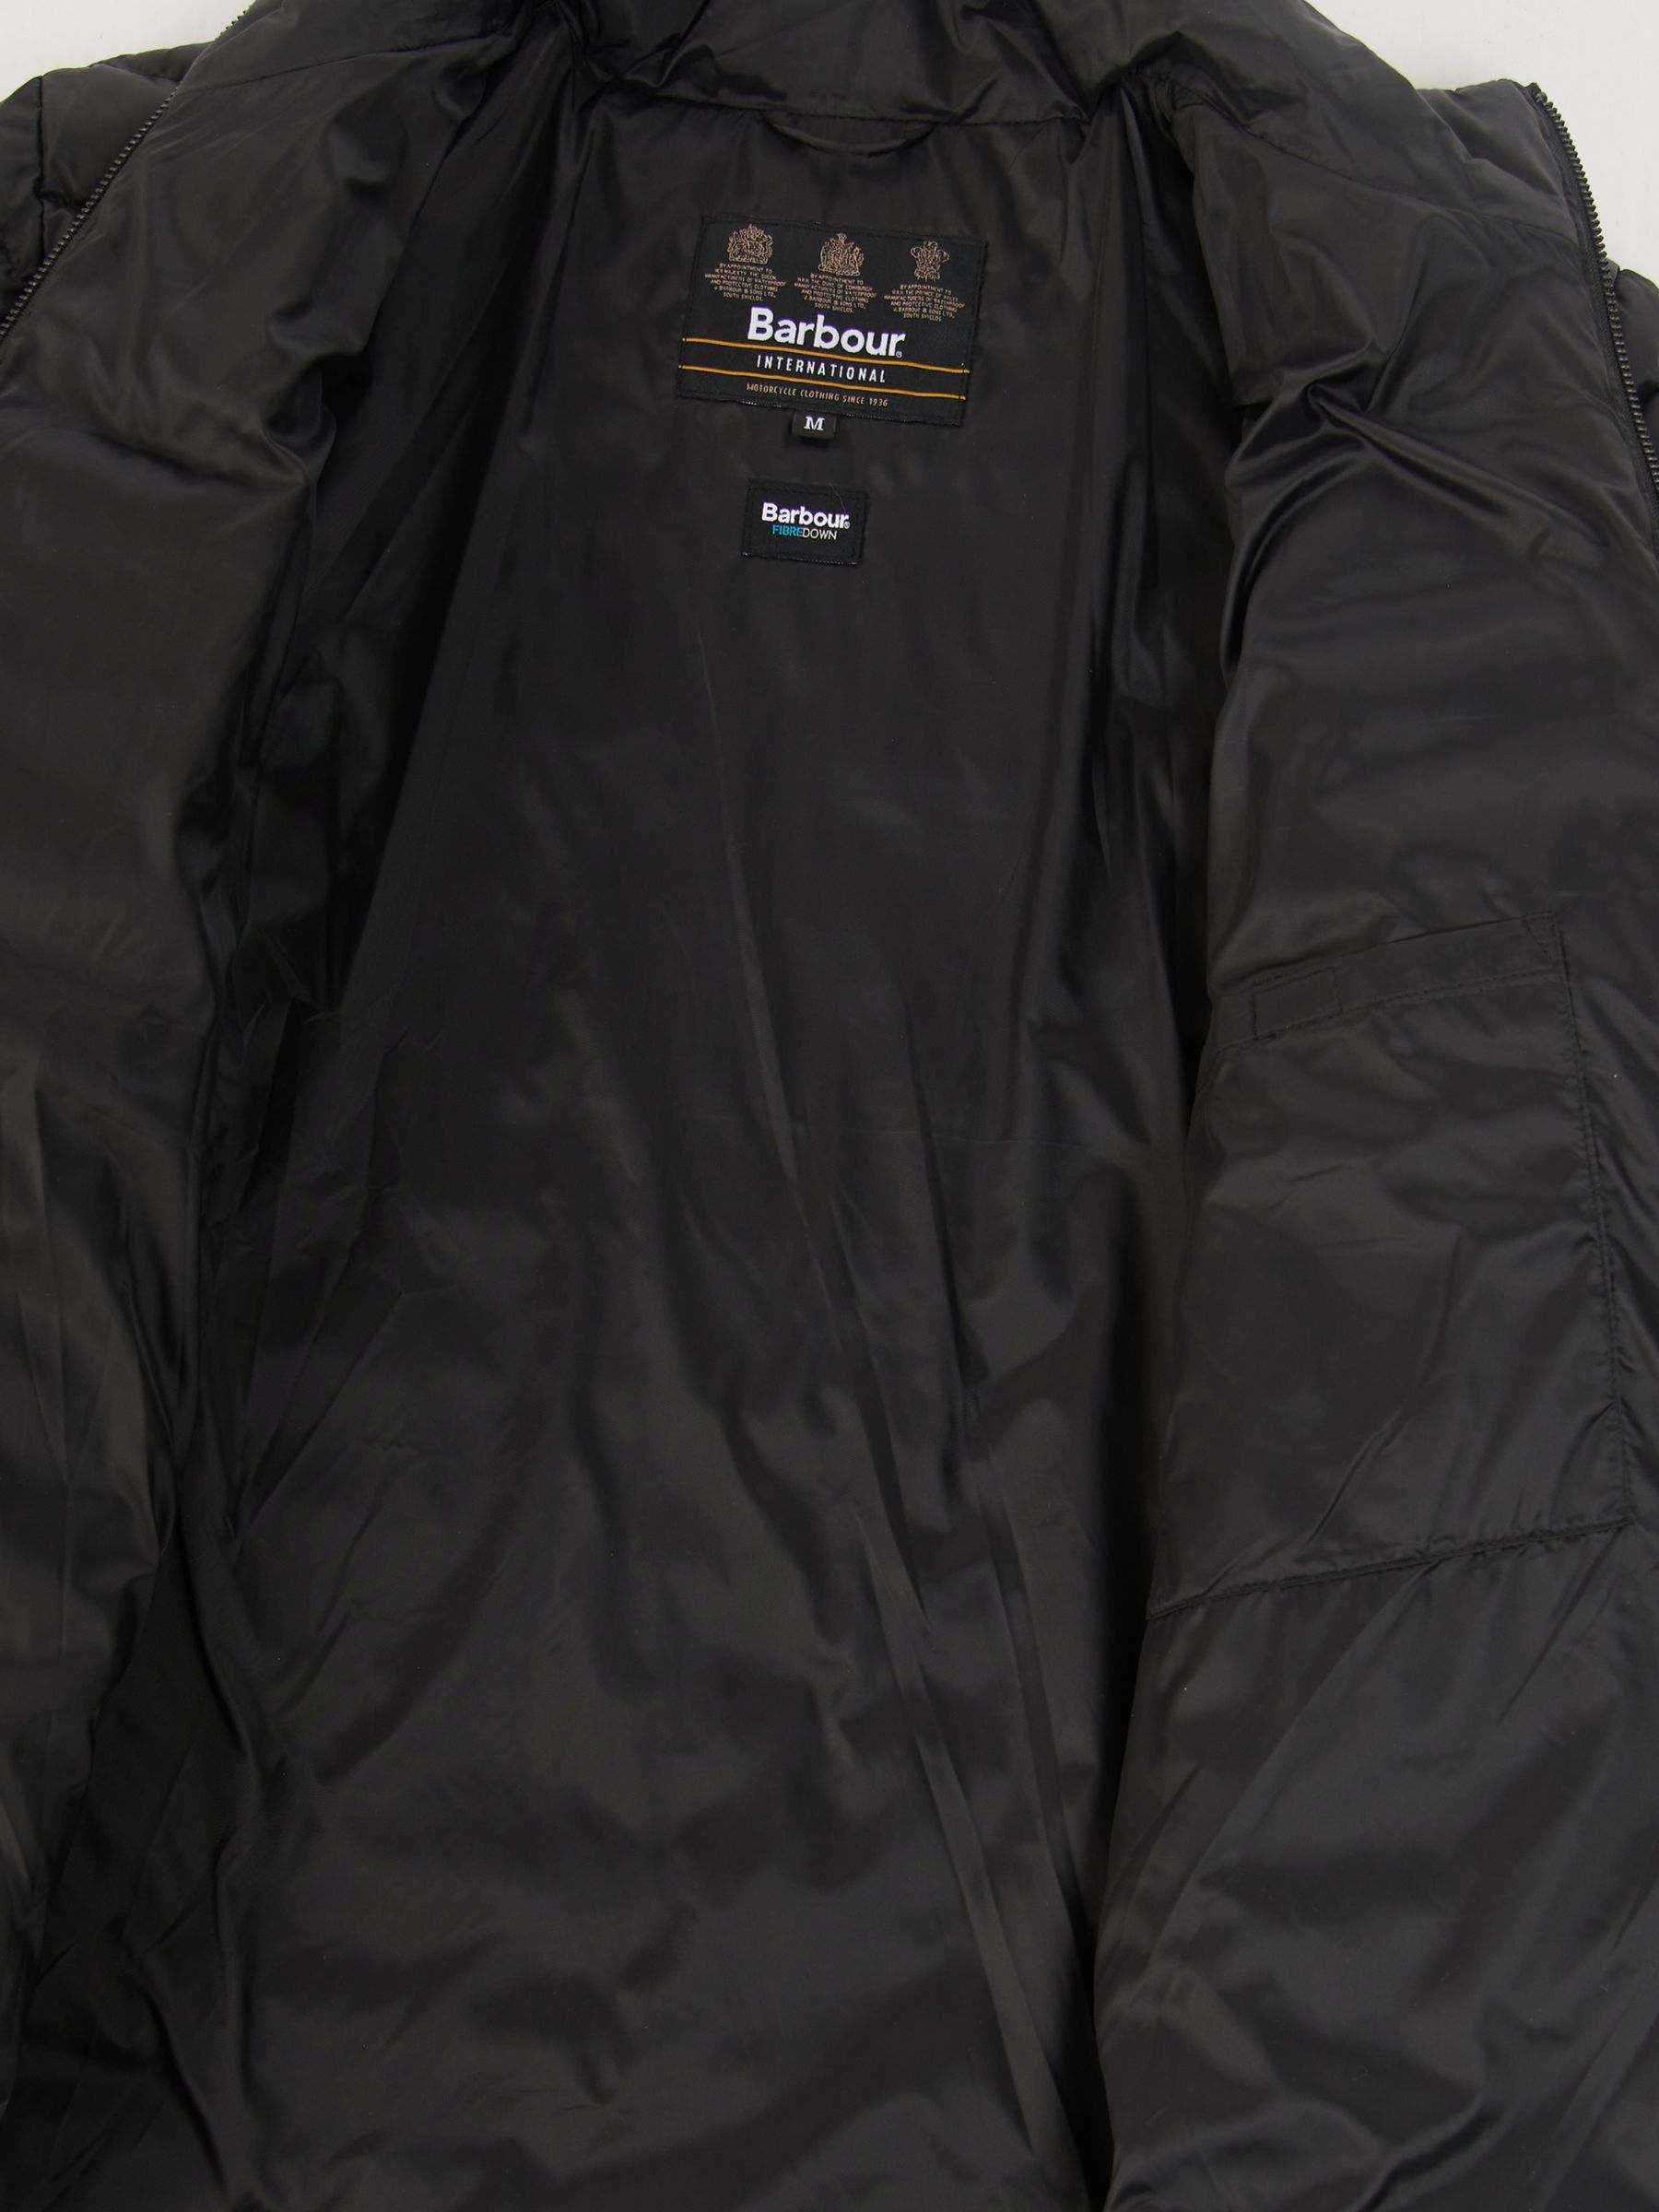 Barbour International Impeller Quilted Jacket, Black at John Lewis ...